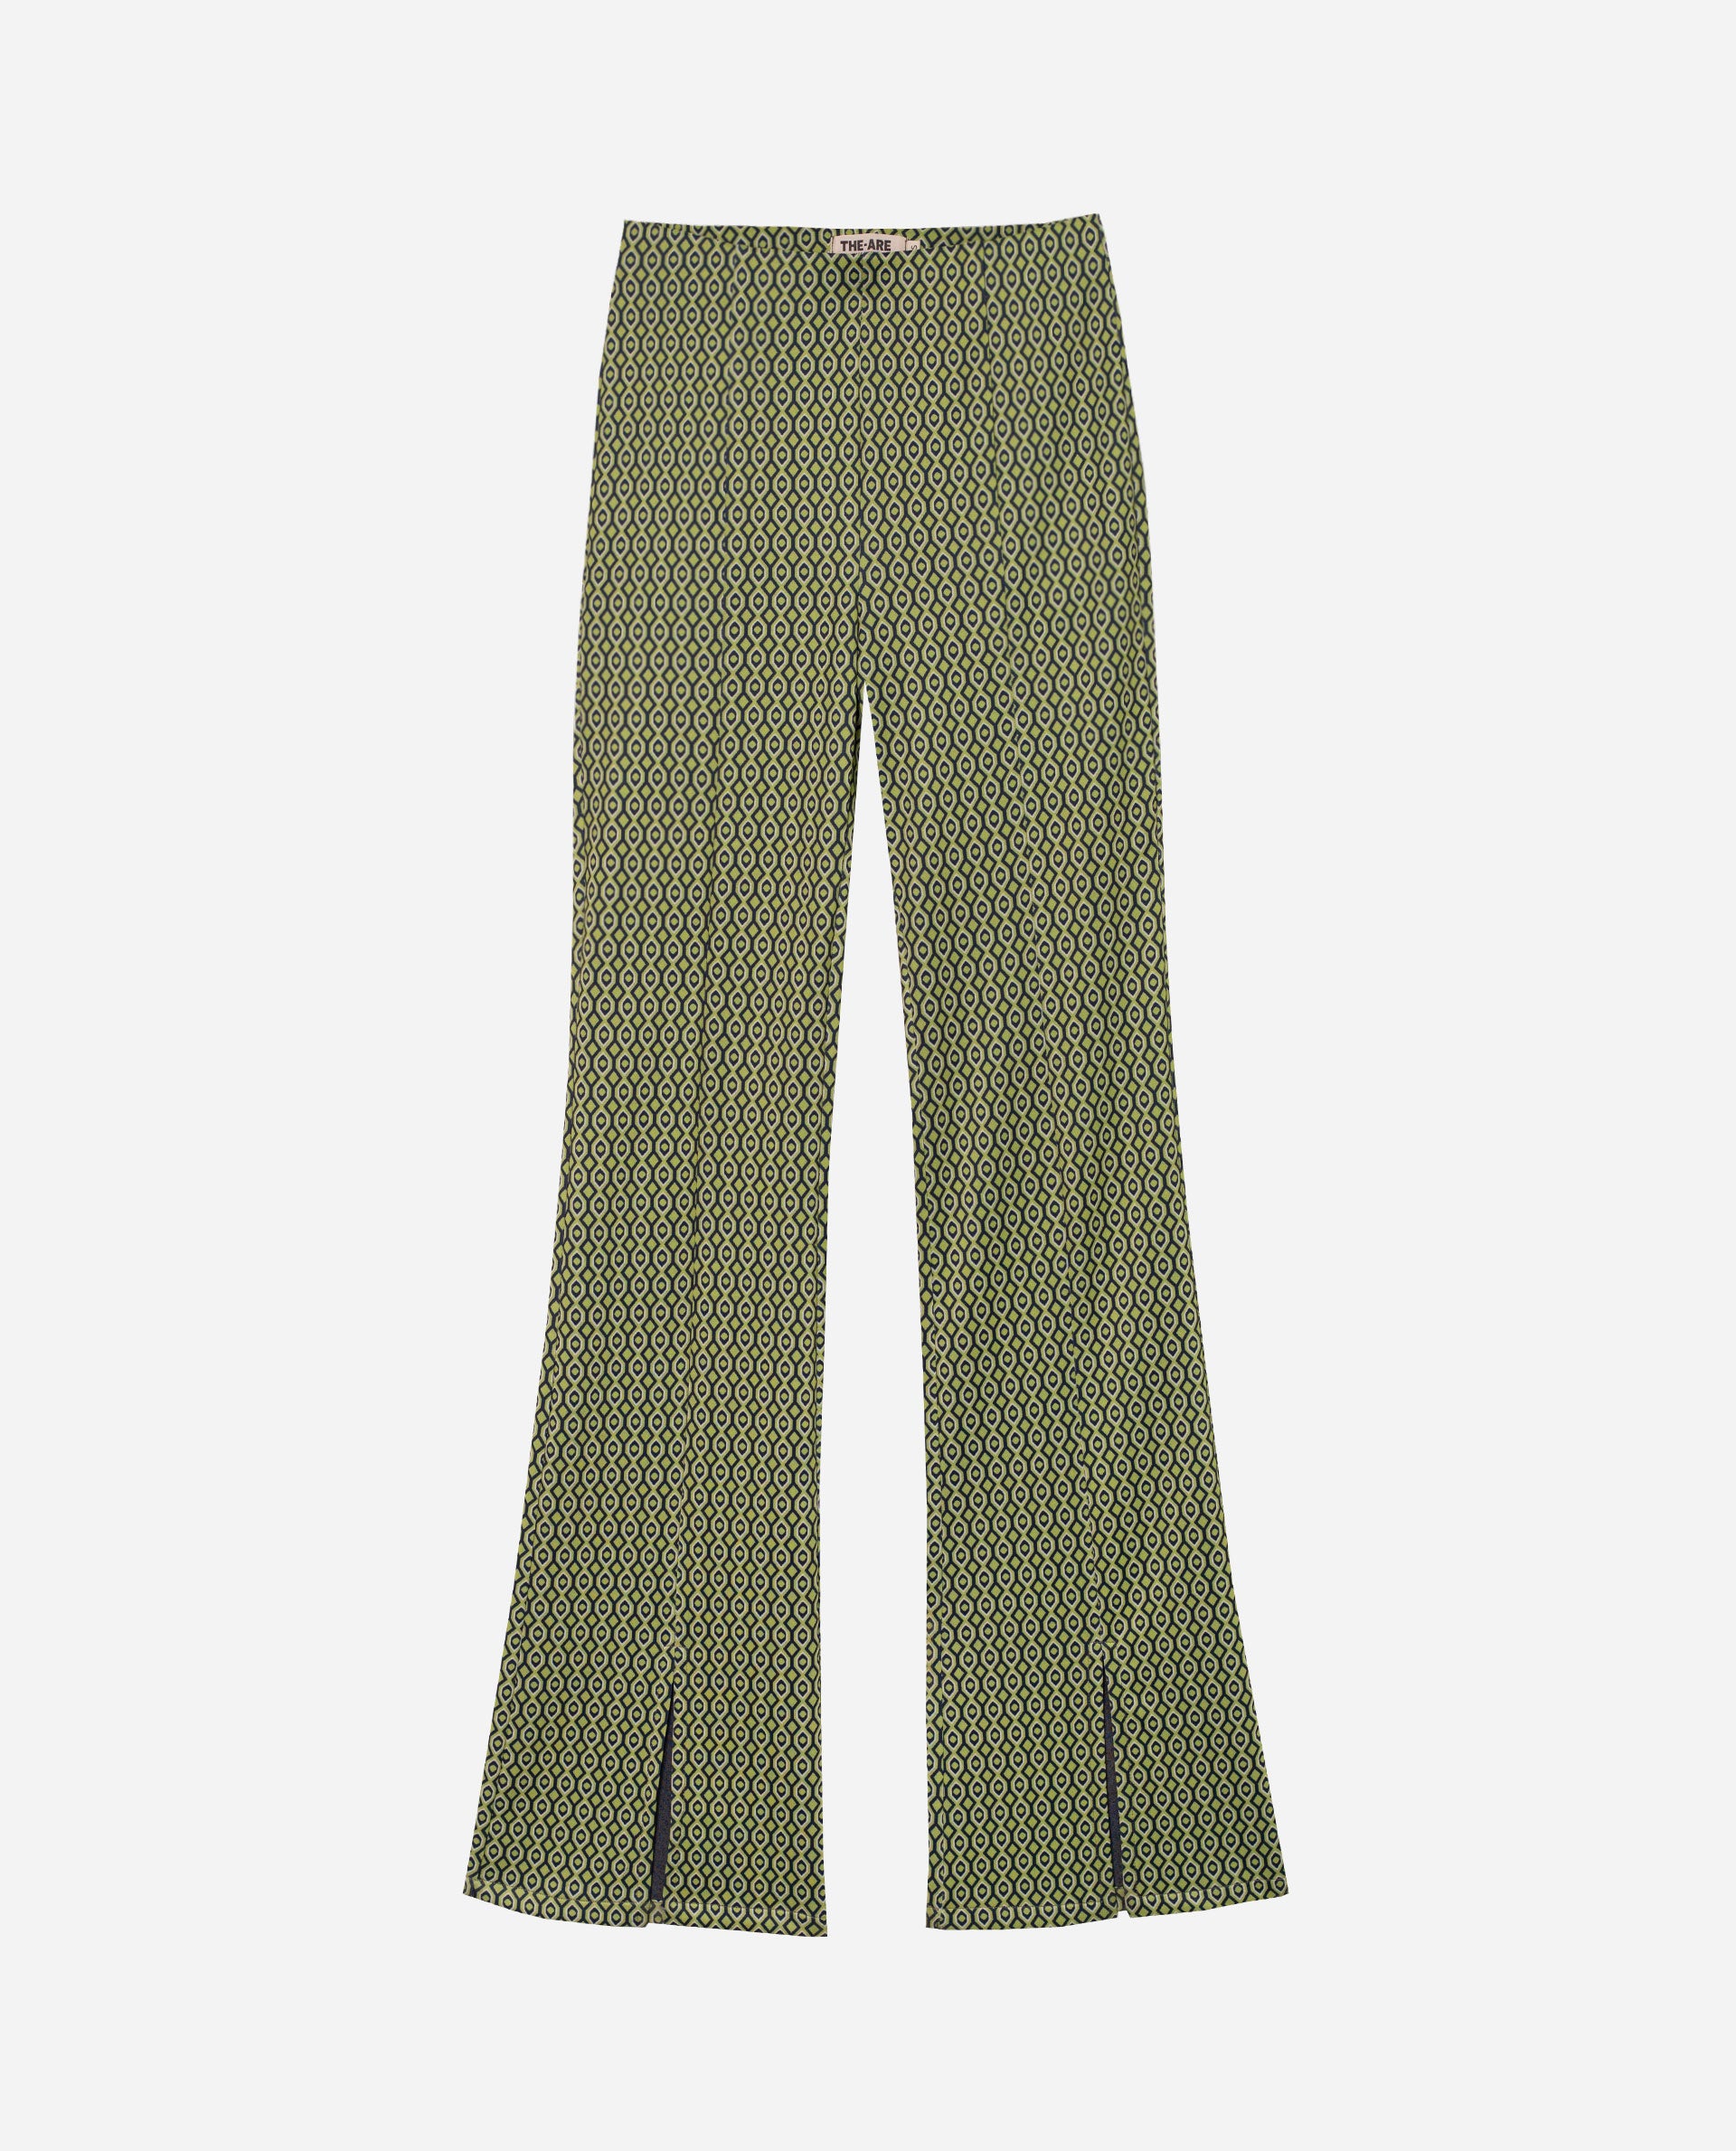 Pantalón punto estampado - Stártara Shop Tienda online Boho Chic